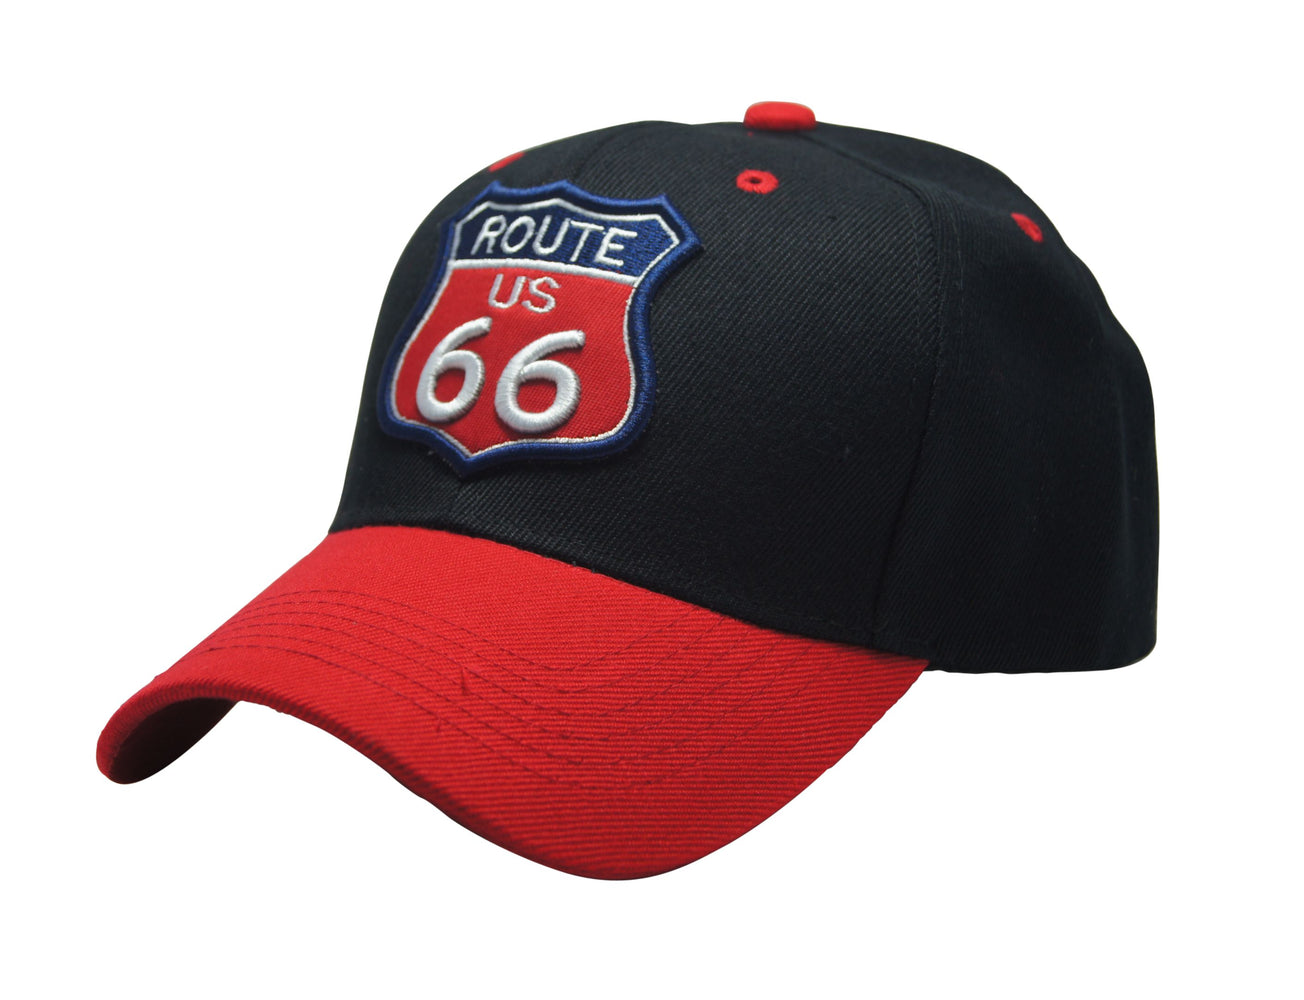 "Famous Route 66" 3D Embroidery Emblem